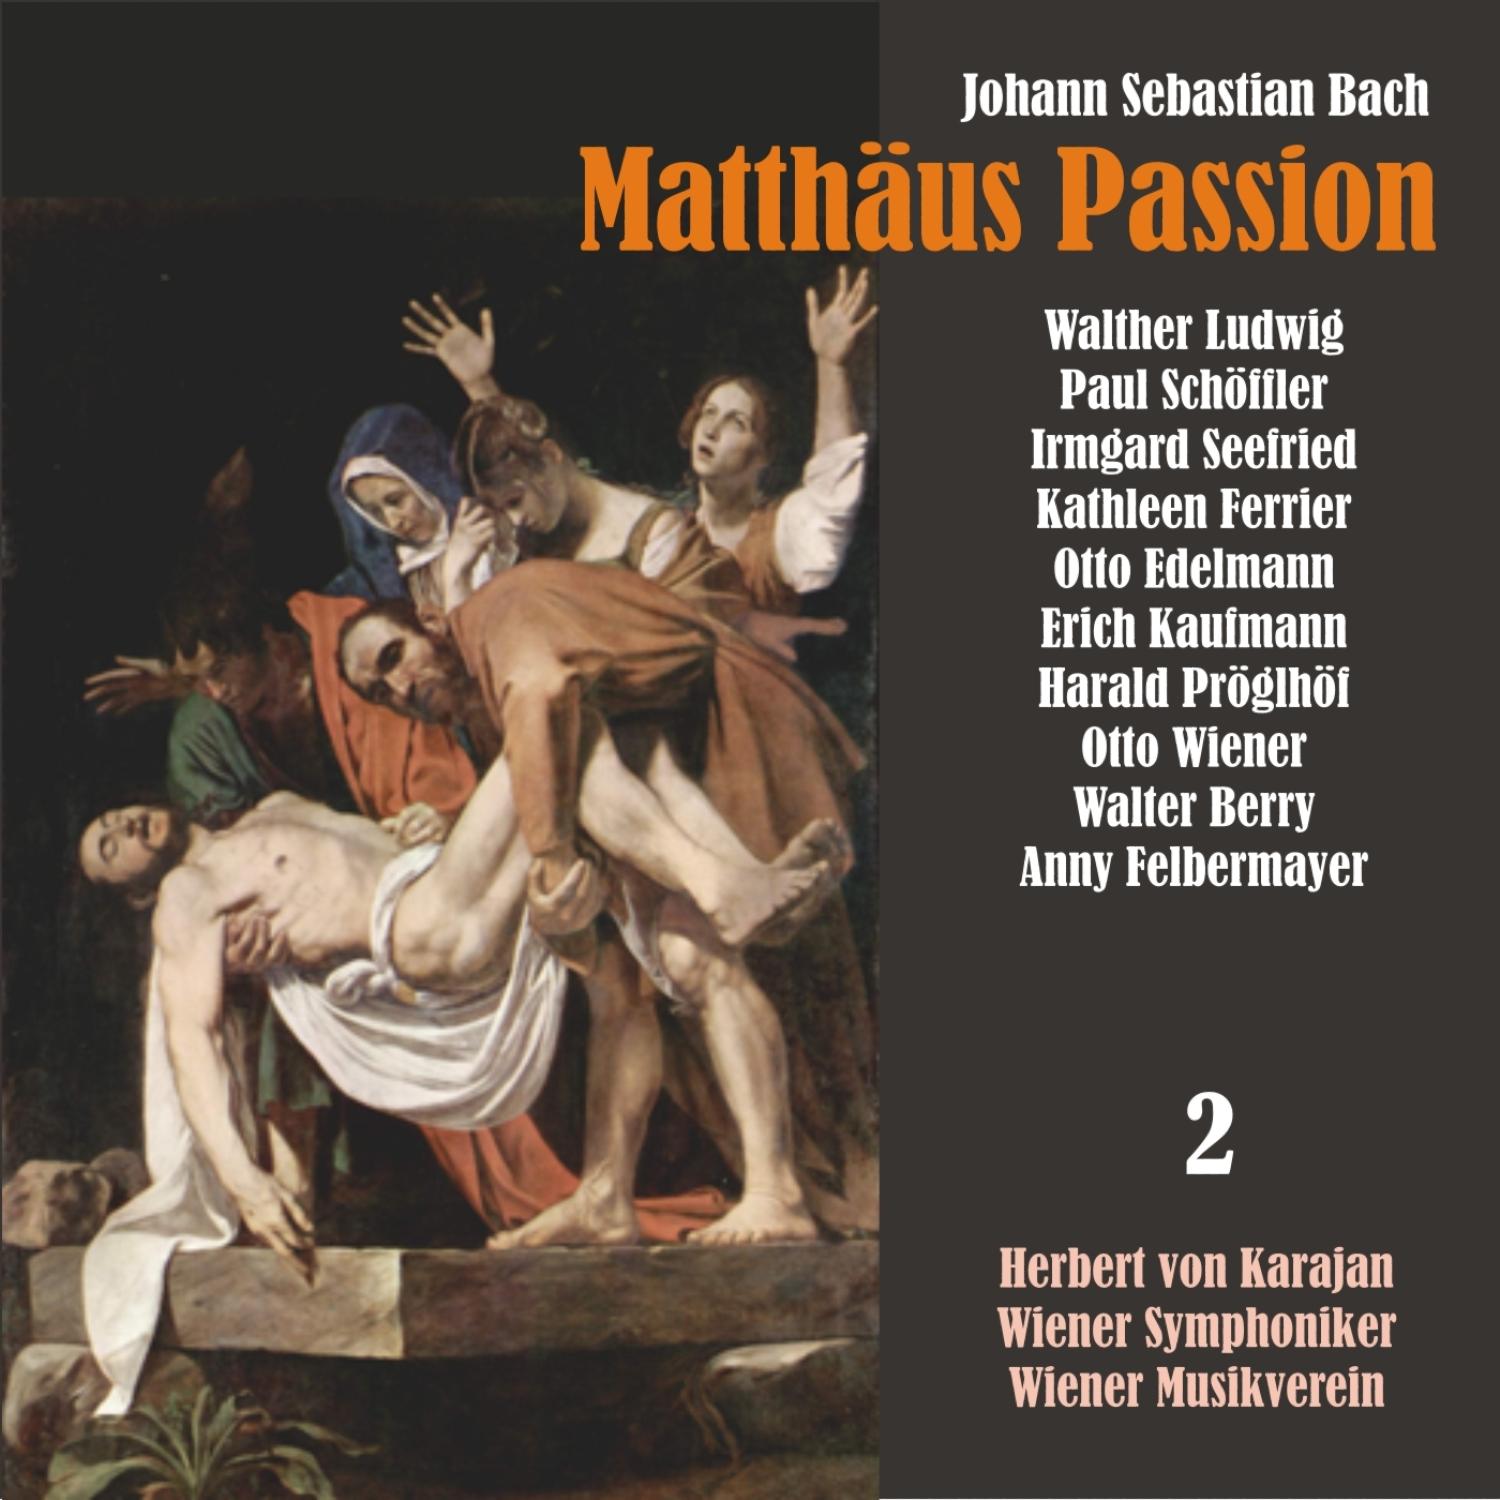 Matthäus Passion, BWV 244: "Bin ich gleich von dir gewichen"